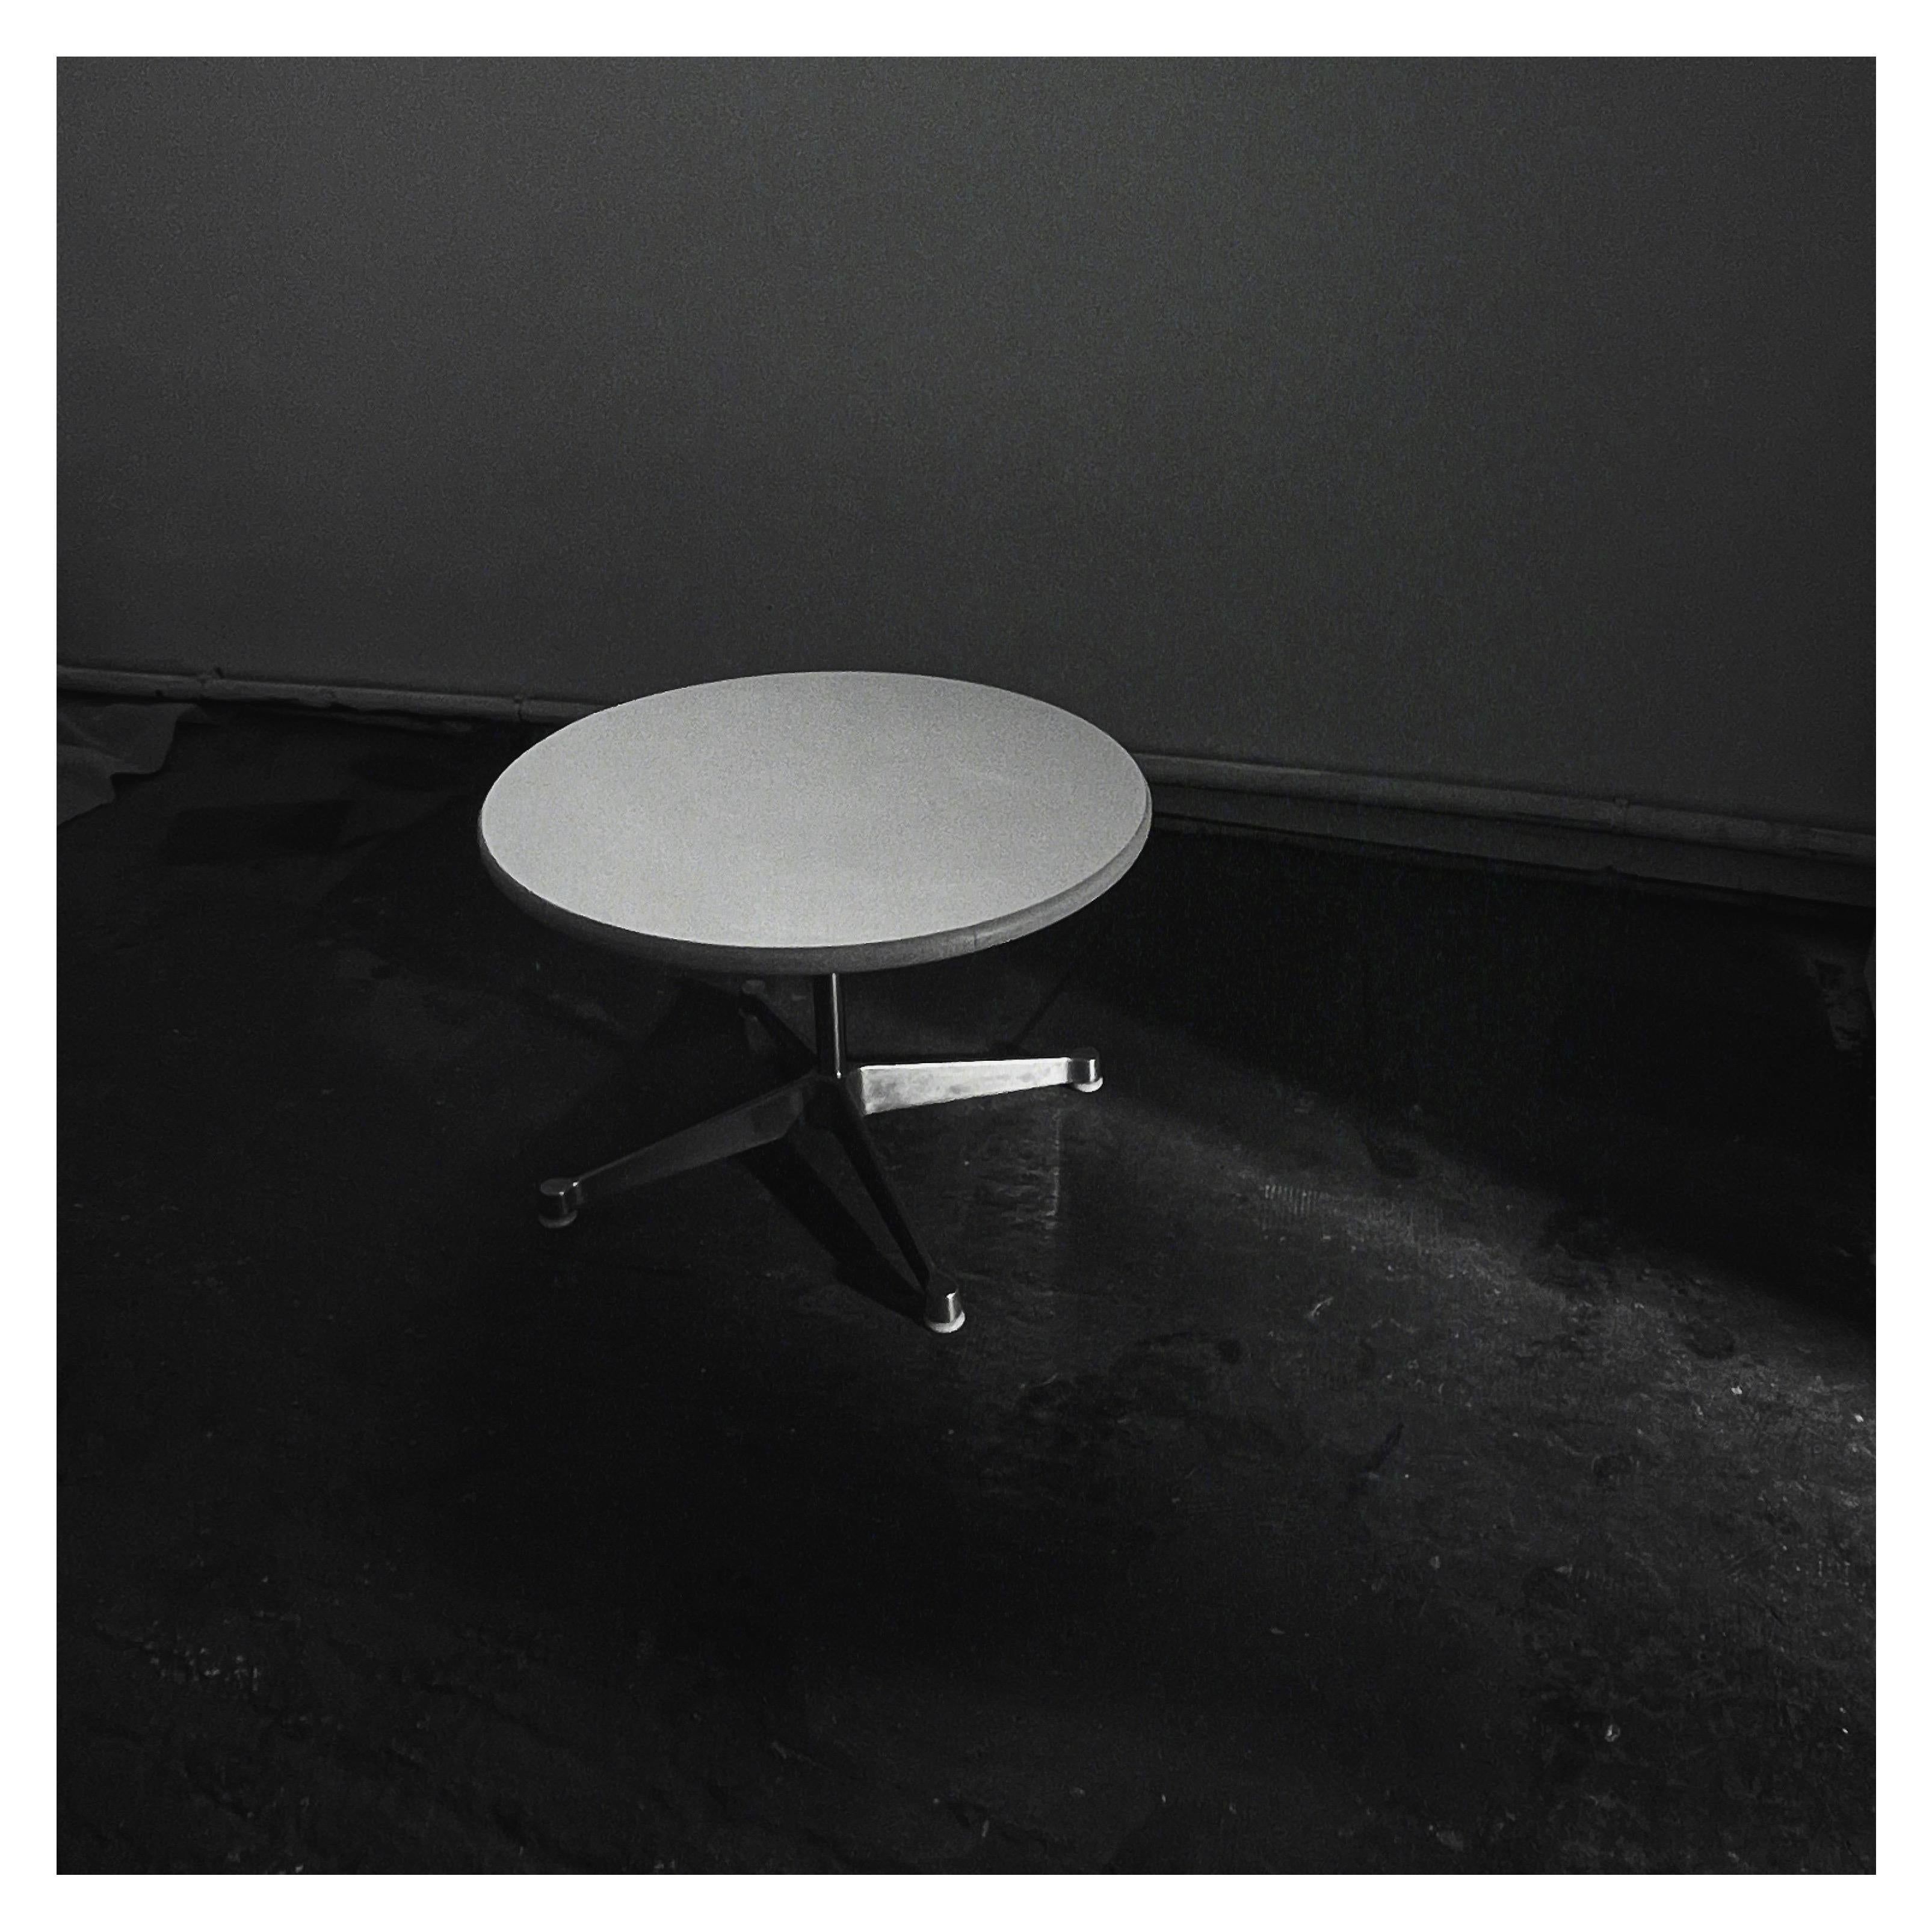 Cette table basse, table d’appoint ou coffee table de Charles & Ray Eames a été éditée par Mobilier International dans les années 1960. Elle présente un plateau en stratifié blanc avec une garniture en caoutchouc beige et est soutenue par une base